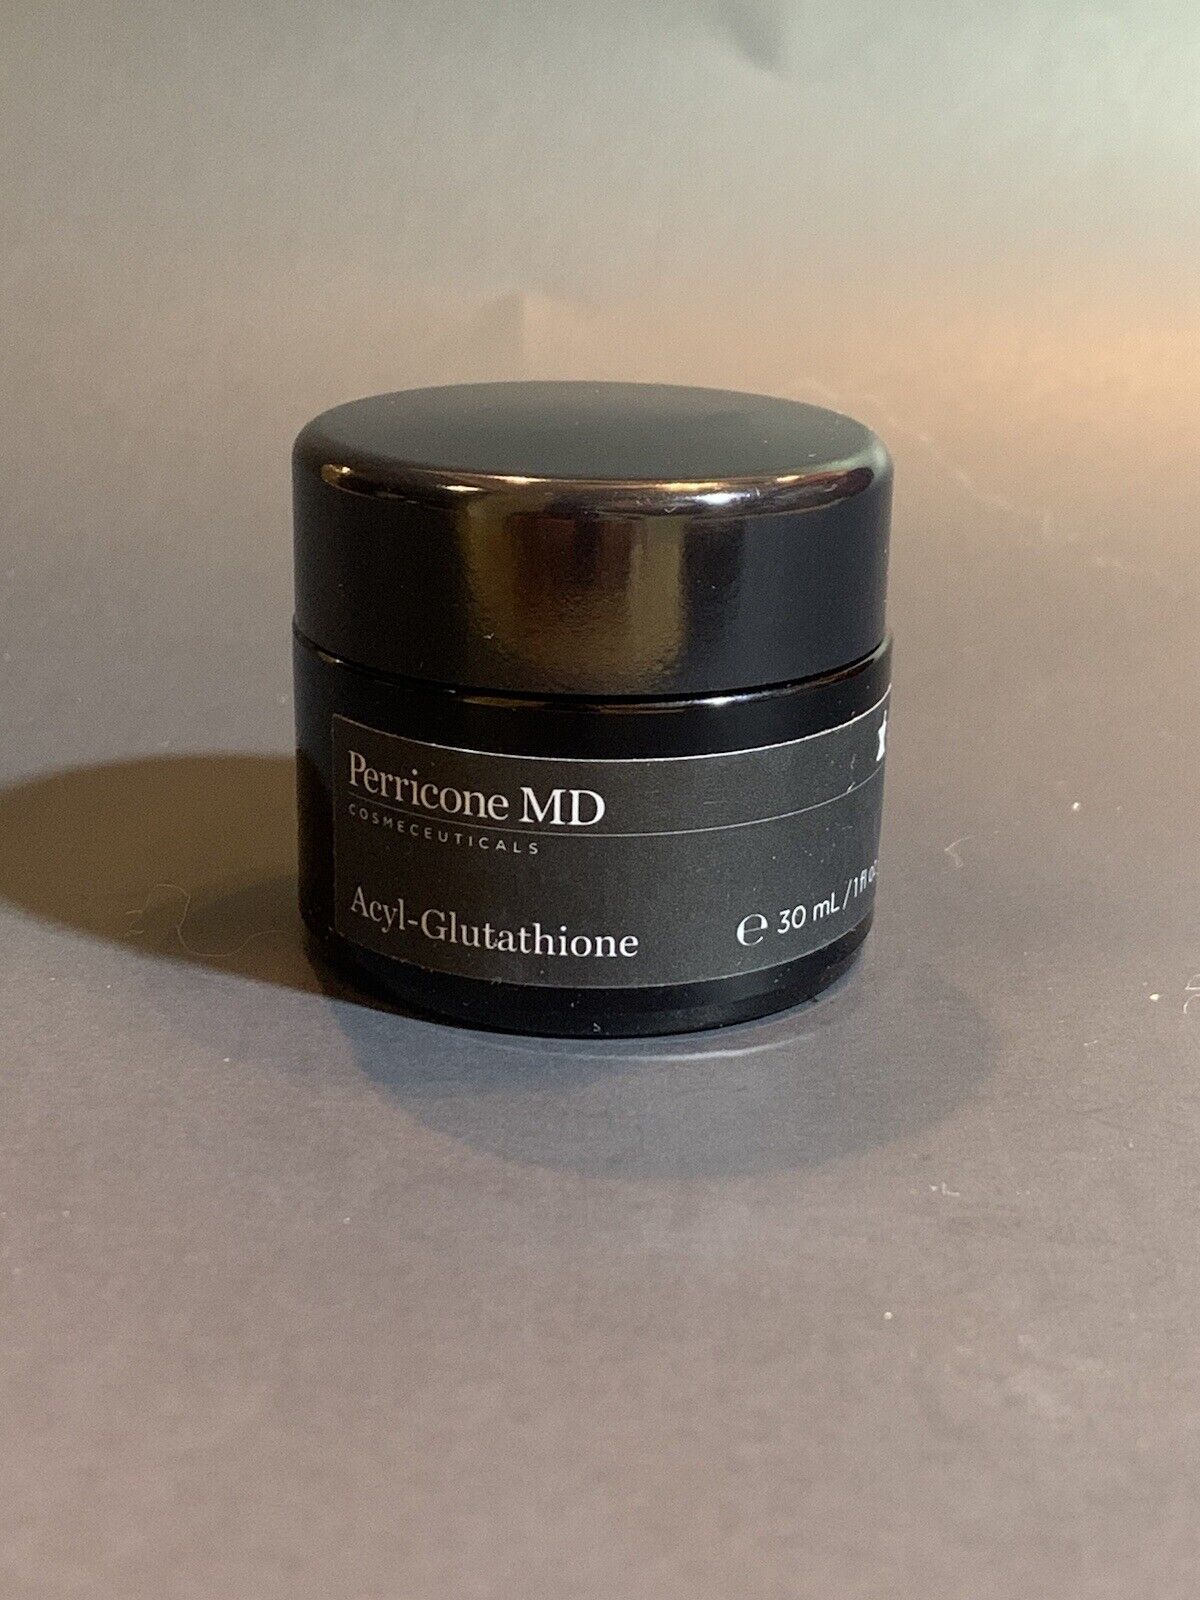 Perricone Md Acyl - Glutathione Facial Cream 1 oz/30 ml NWOB Read Description - $64.35